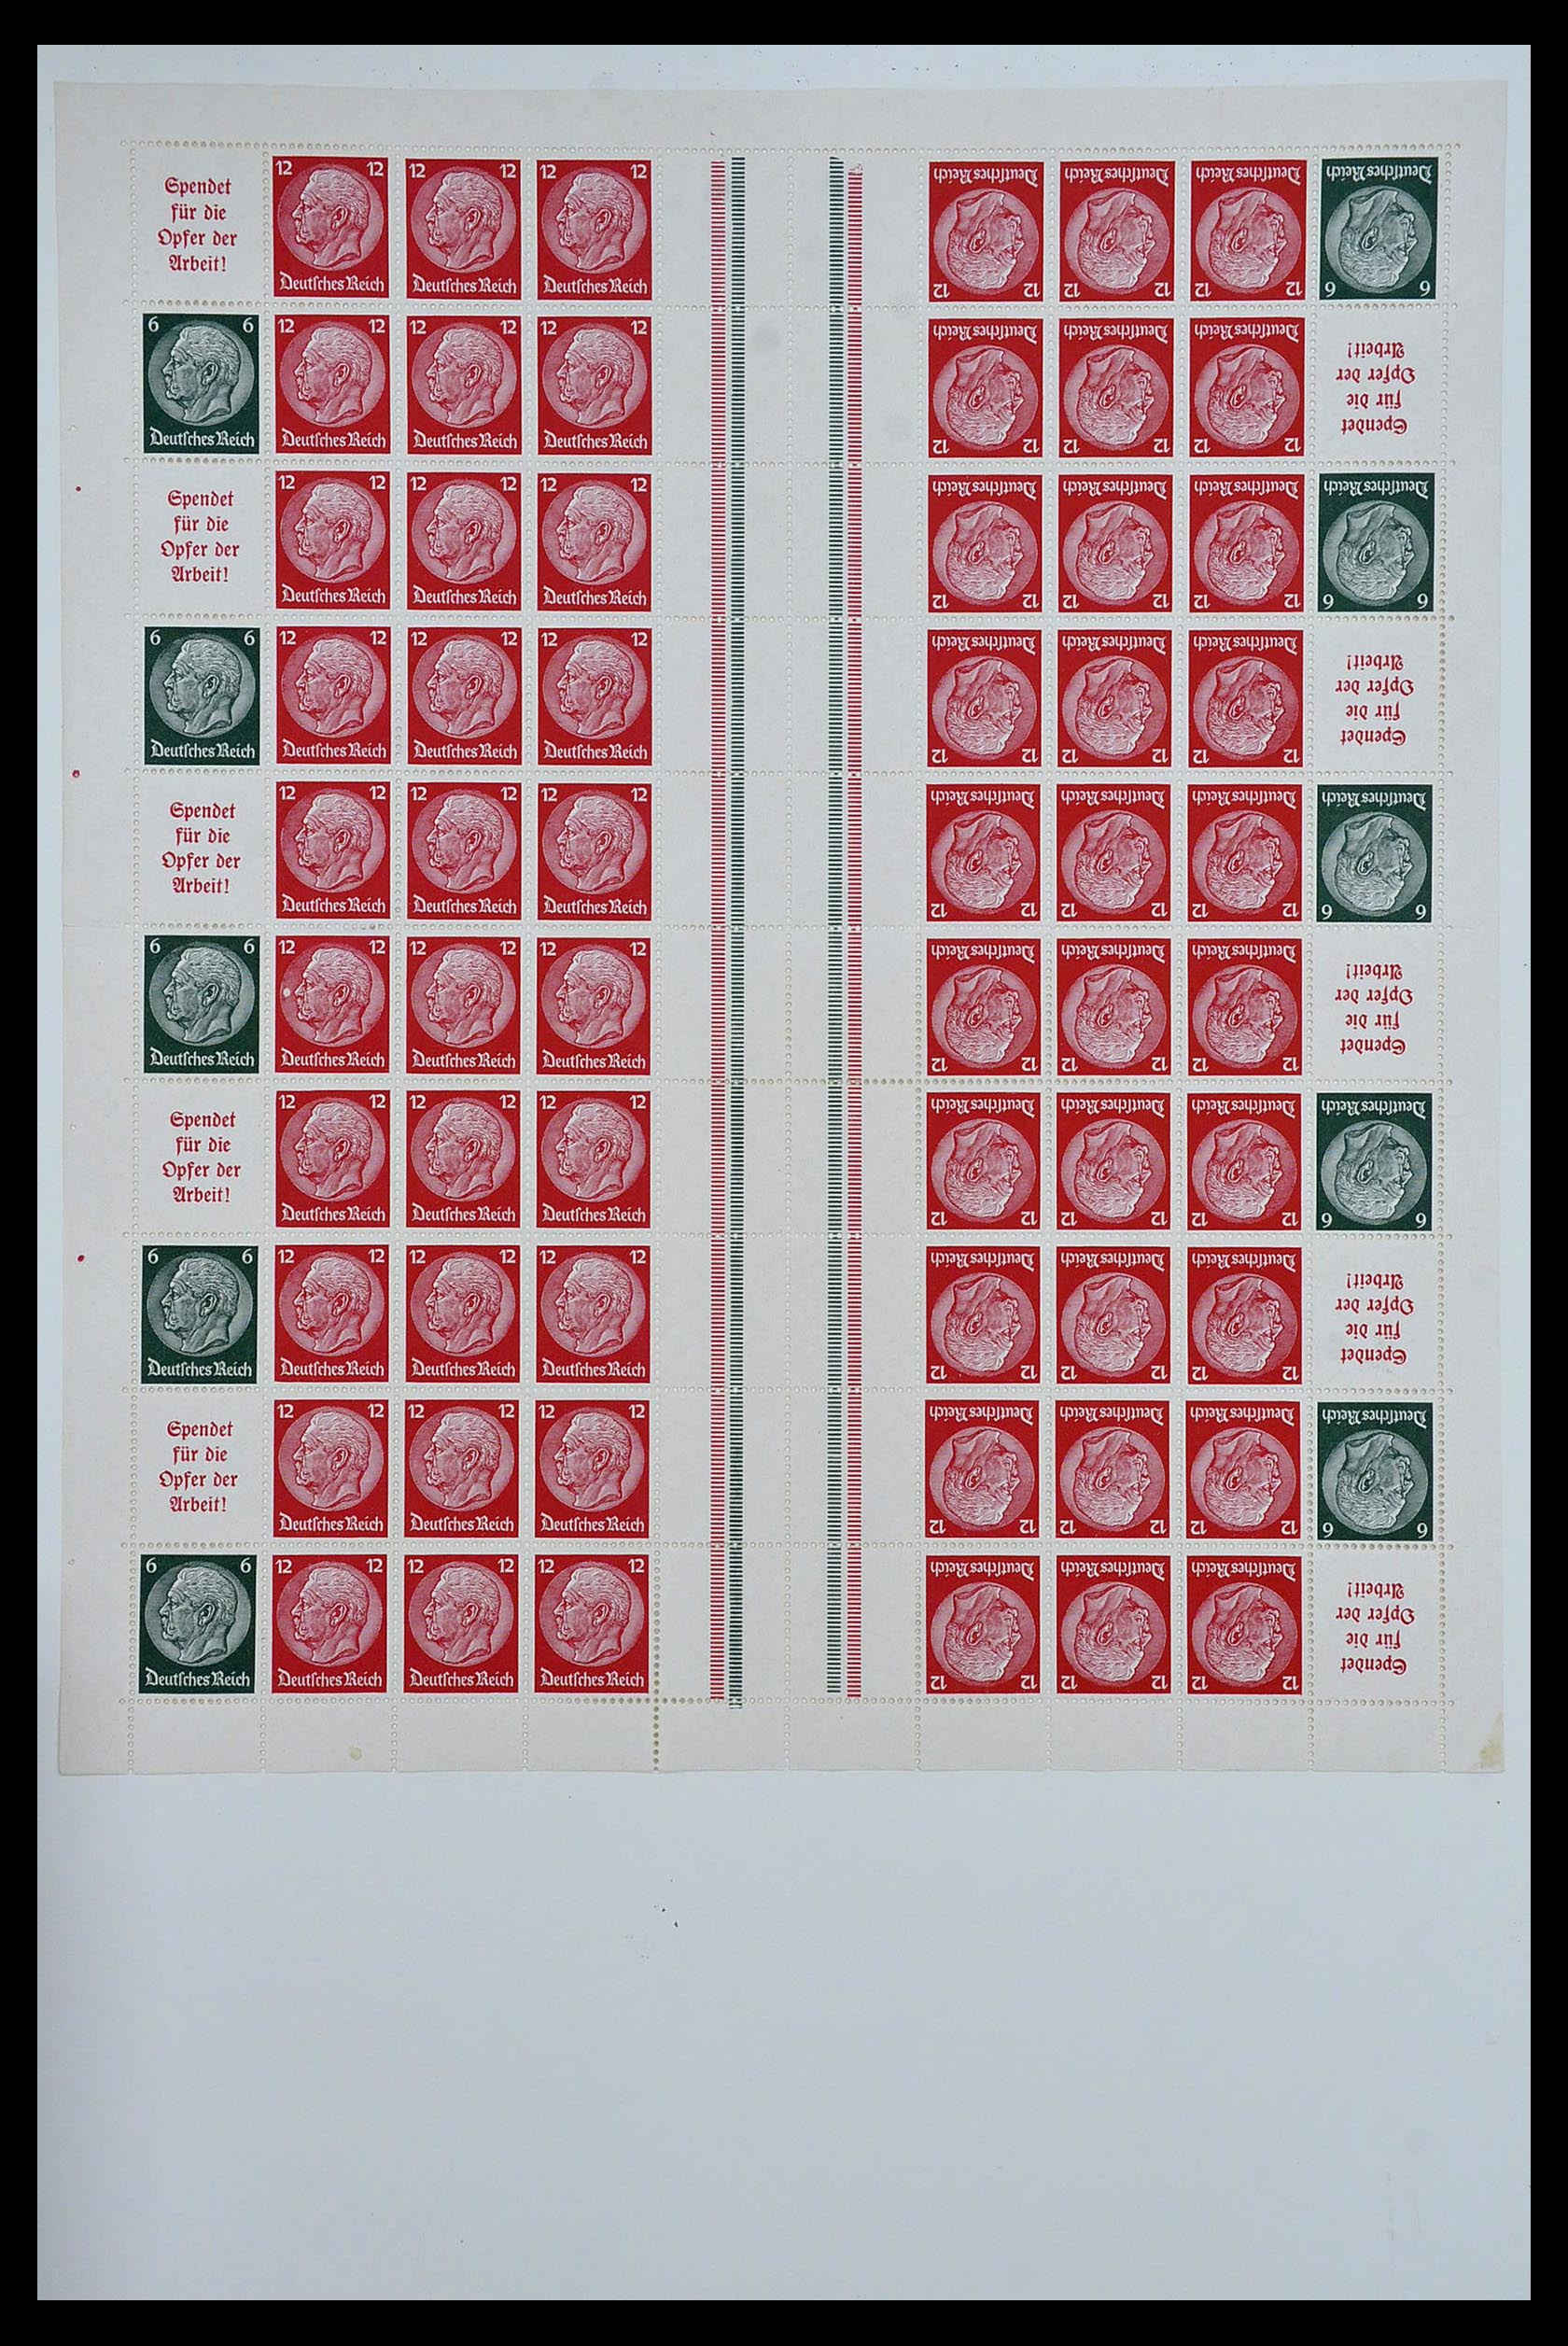 34164 015 - Stamp collection 34164 German Reich Markenheftchenbogen 1933-1942.